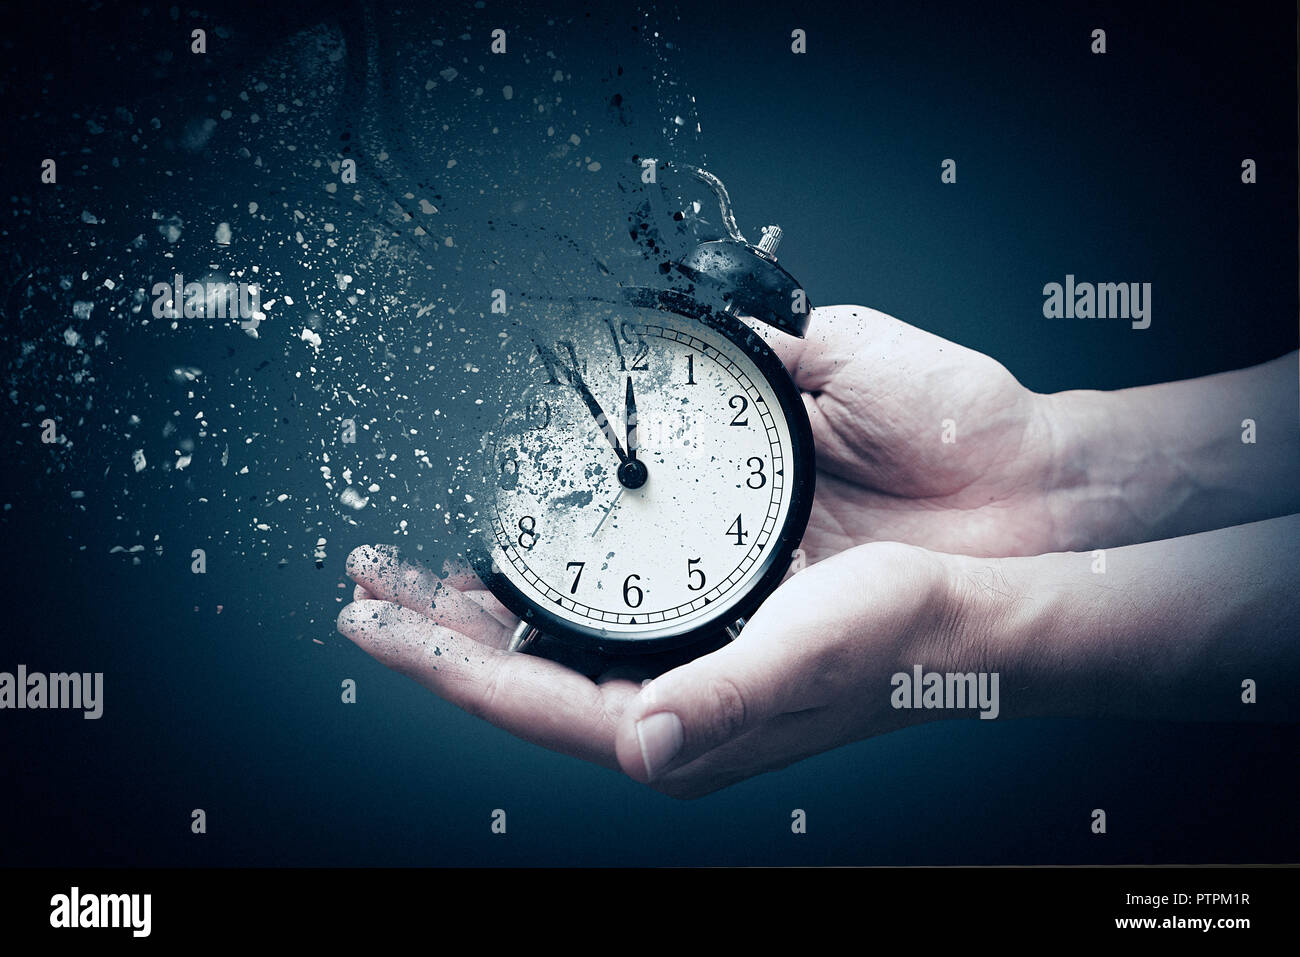 Concept de décès, l'horloge se brise en morceaux. Main tenant une horloge analogique avec effet de dispersion Banque D'Images